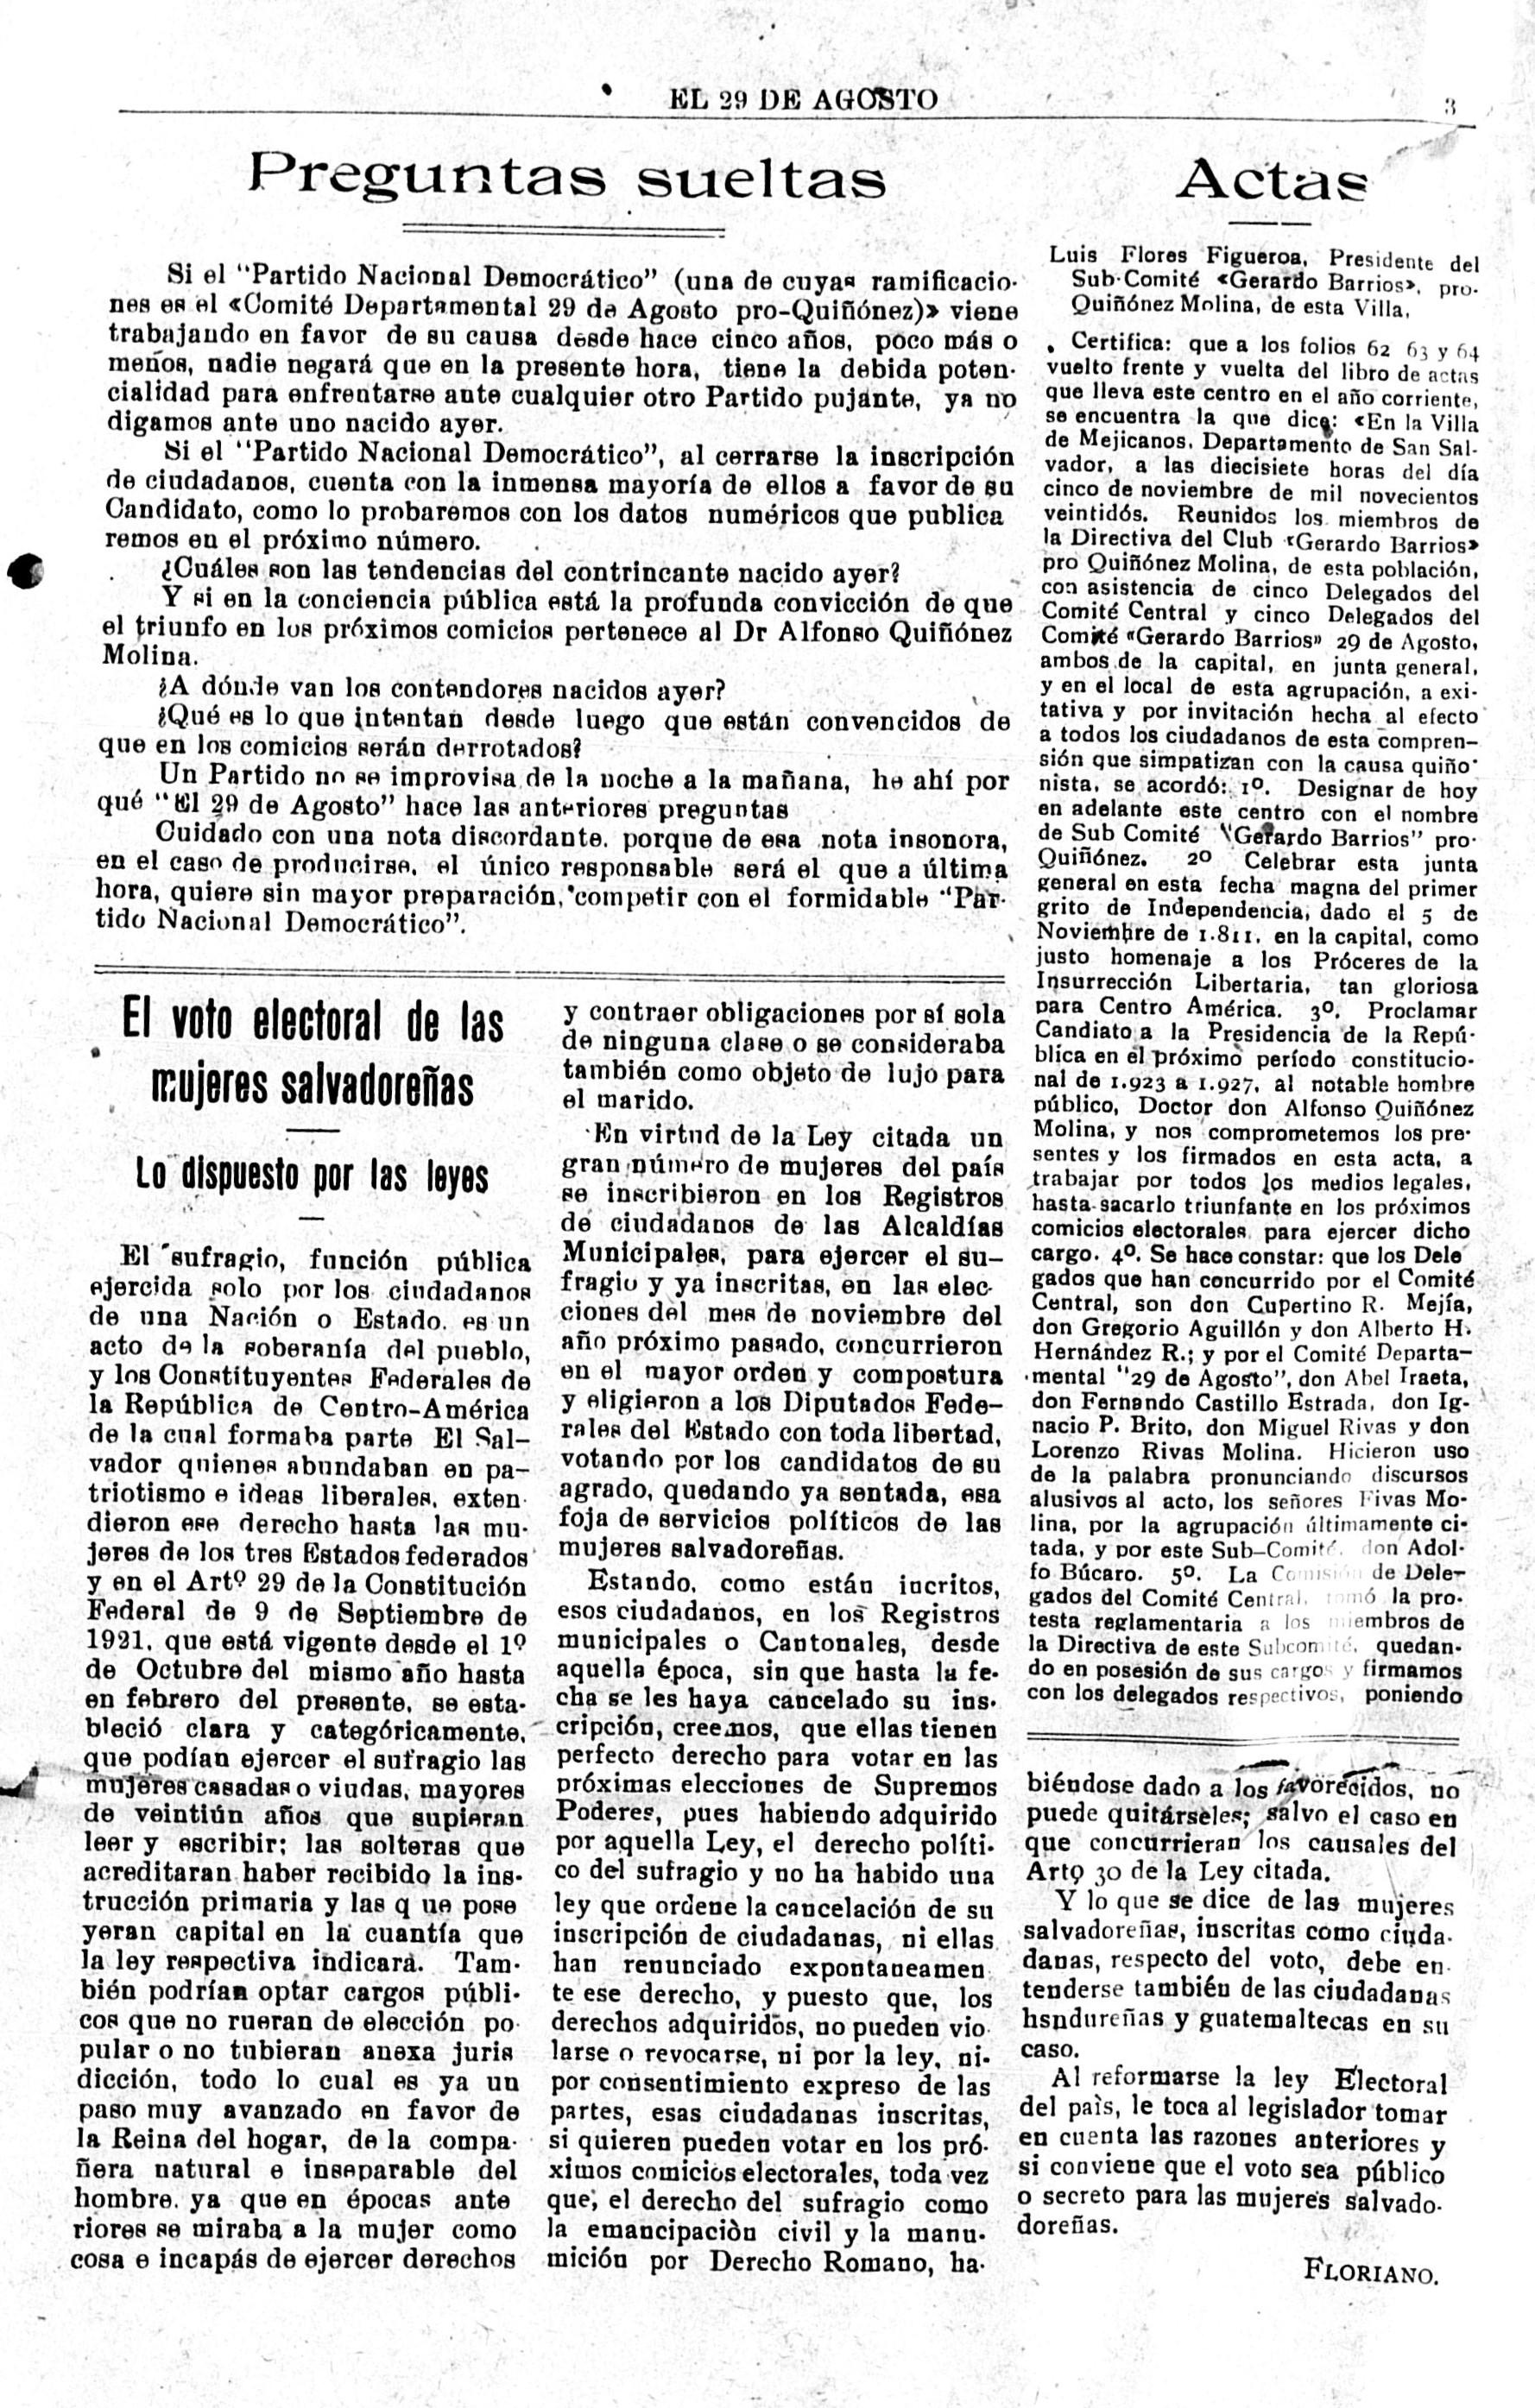 El 29 de Agosto era un órgano de difusión de la campaña presidencial del Dr. Alfonso Quiñónez Molina. Este documento apareció en su edición del 2 de diciembre de 1922, p. 2. 